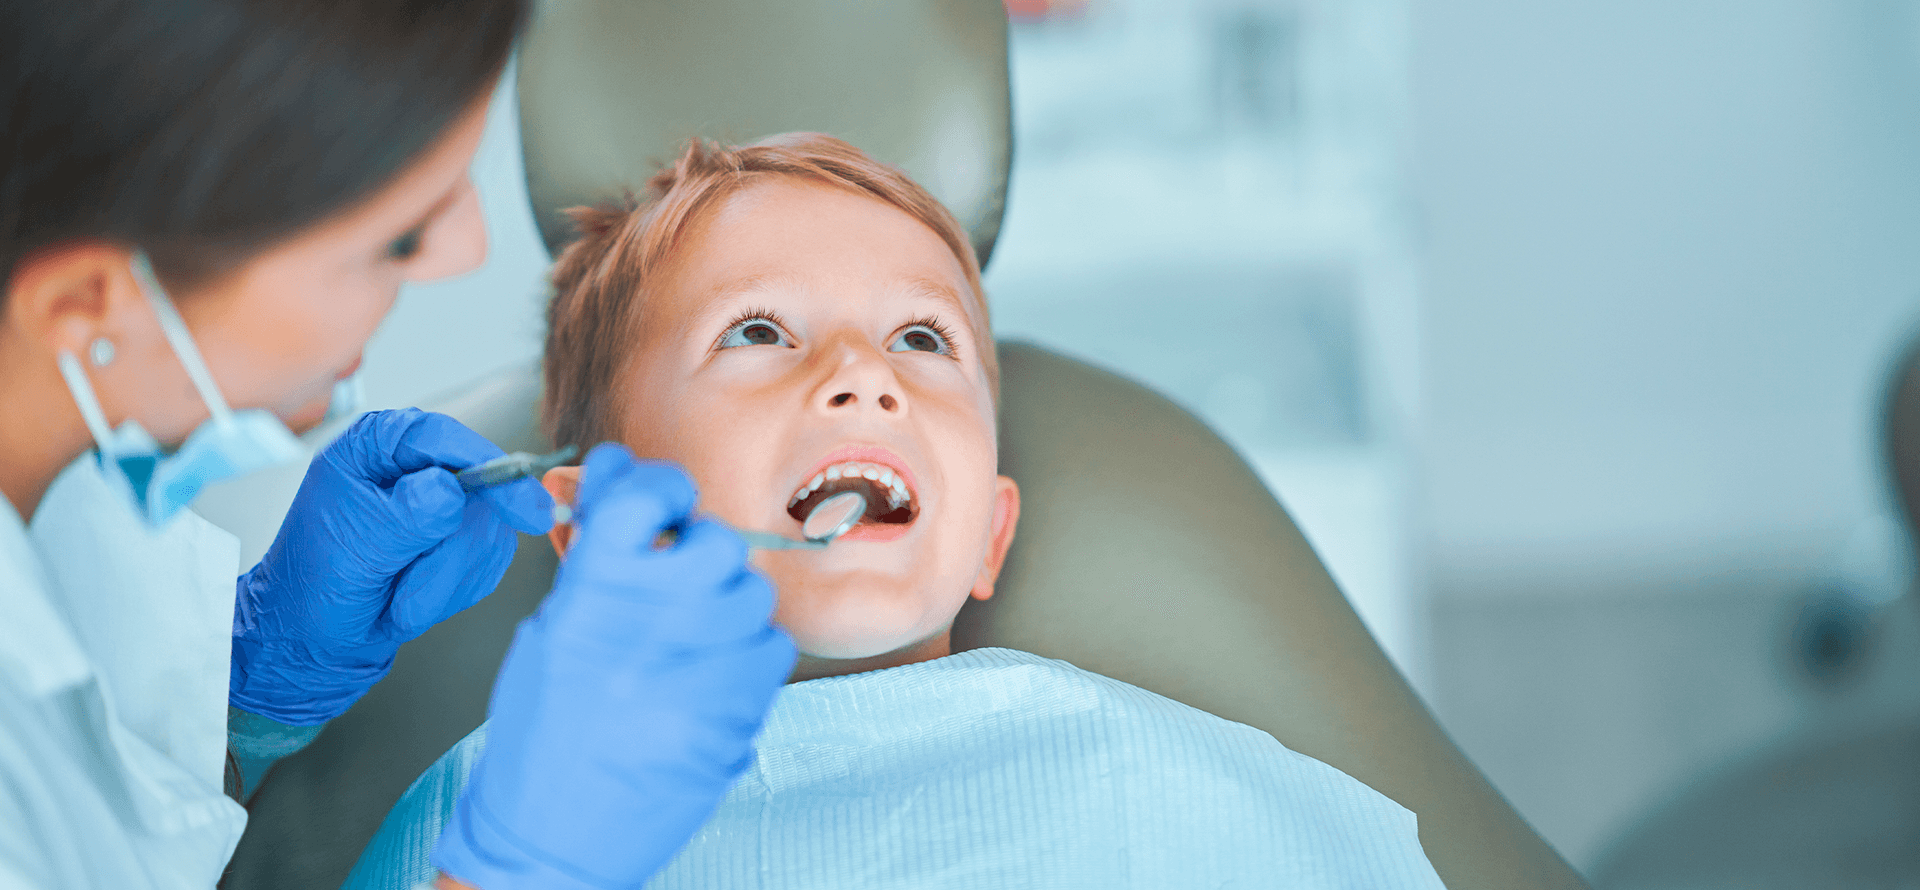 Quando devo levar o meu filho ao dentista?